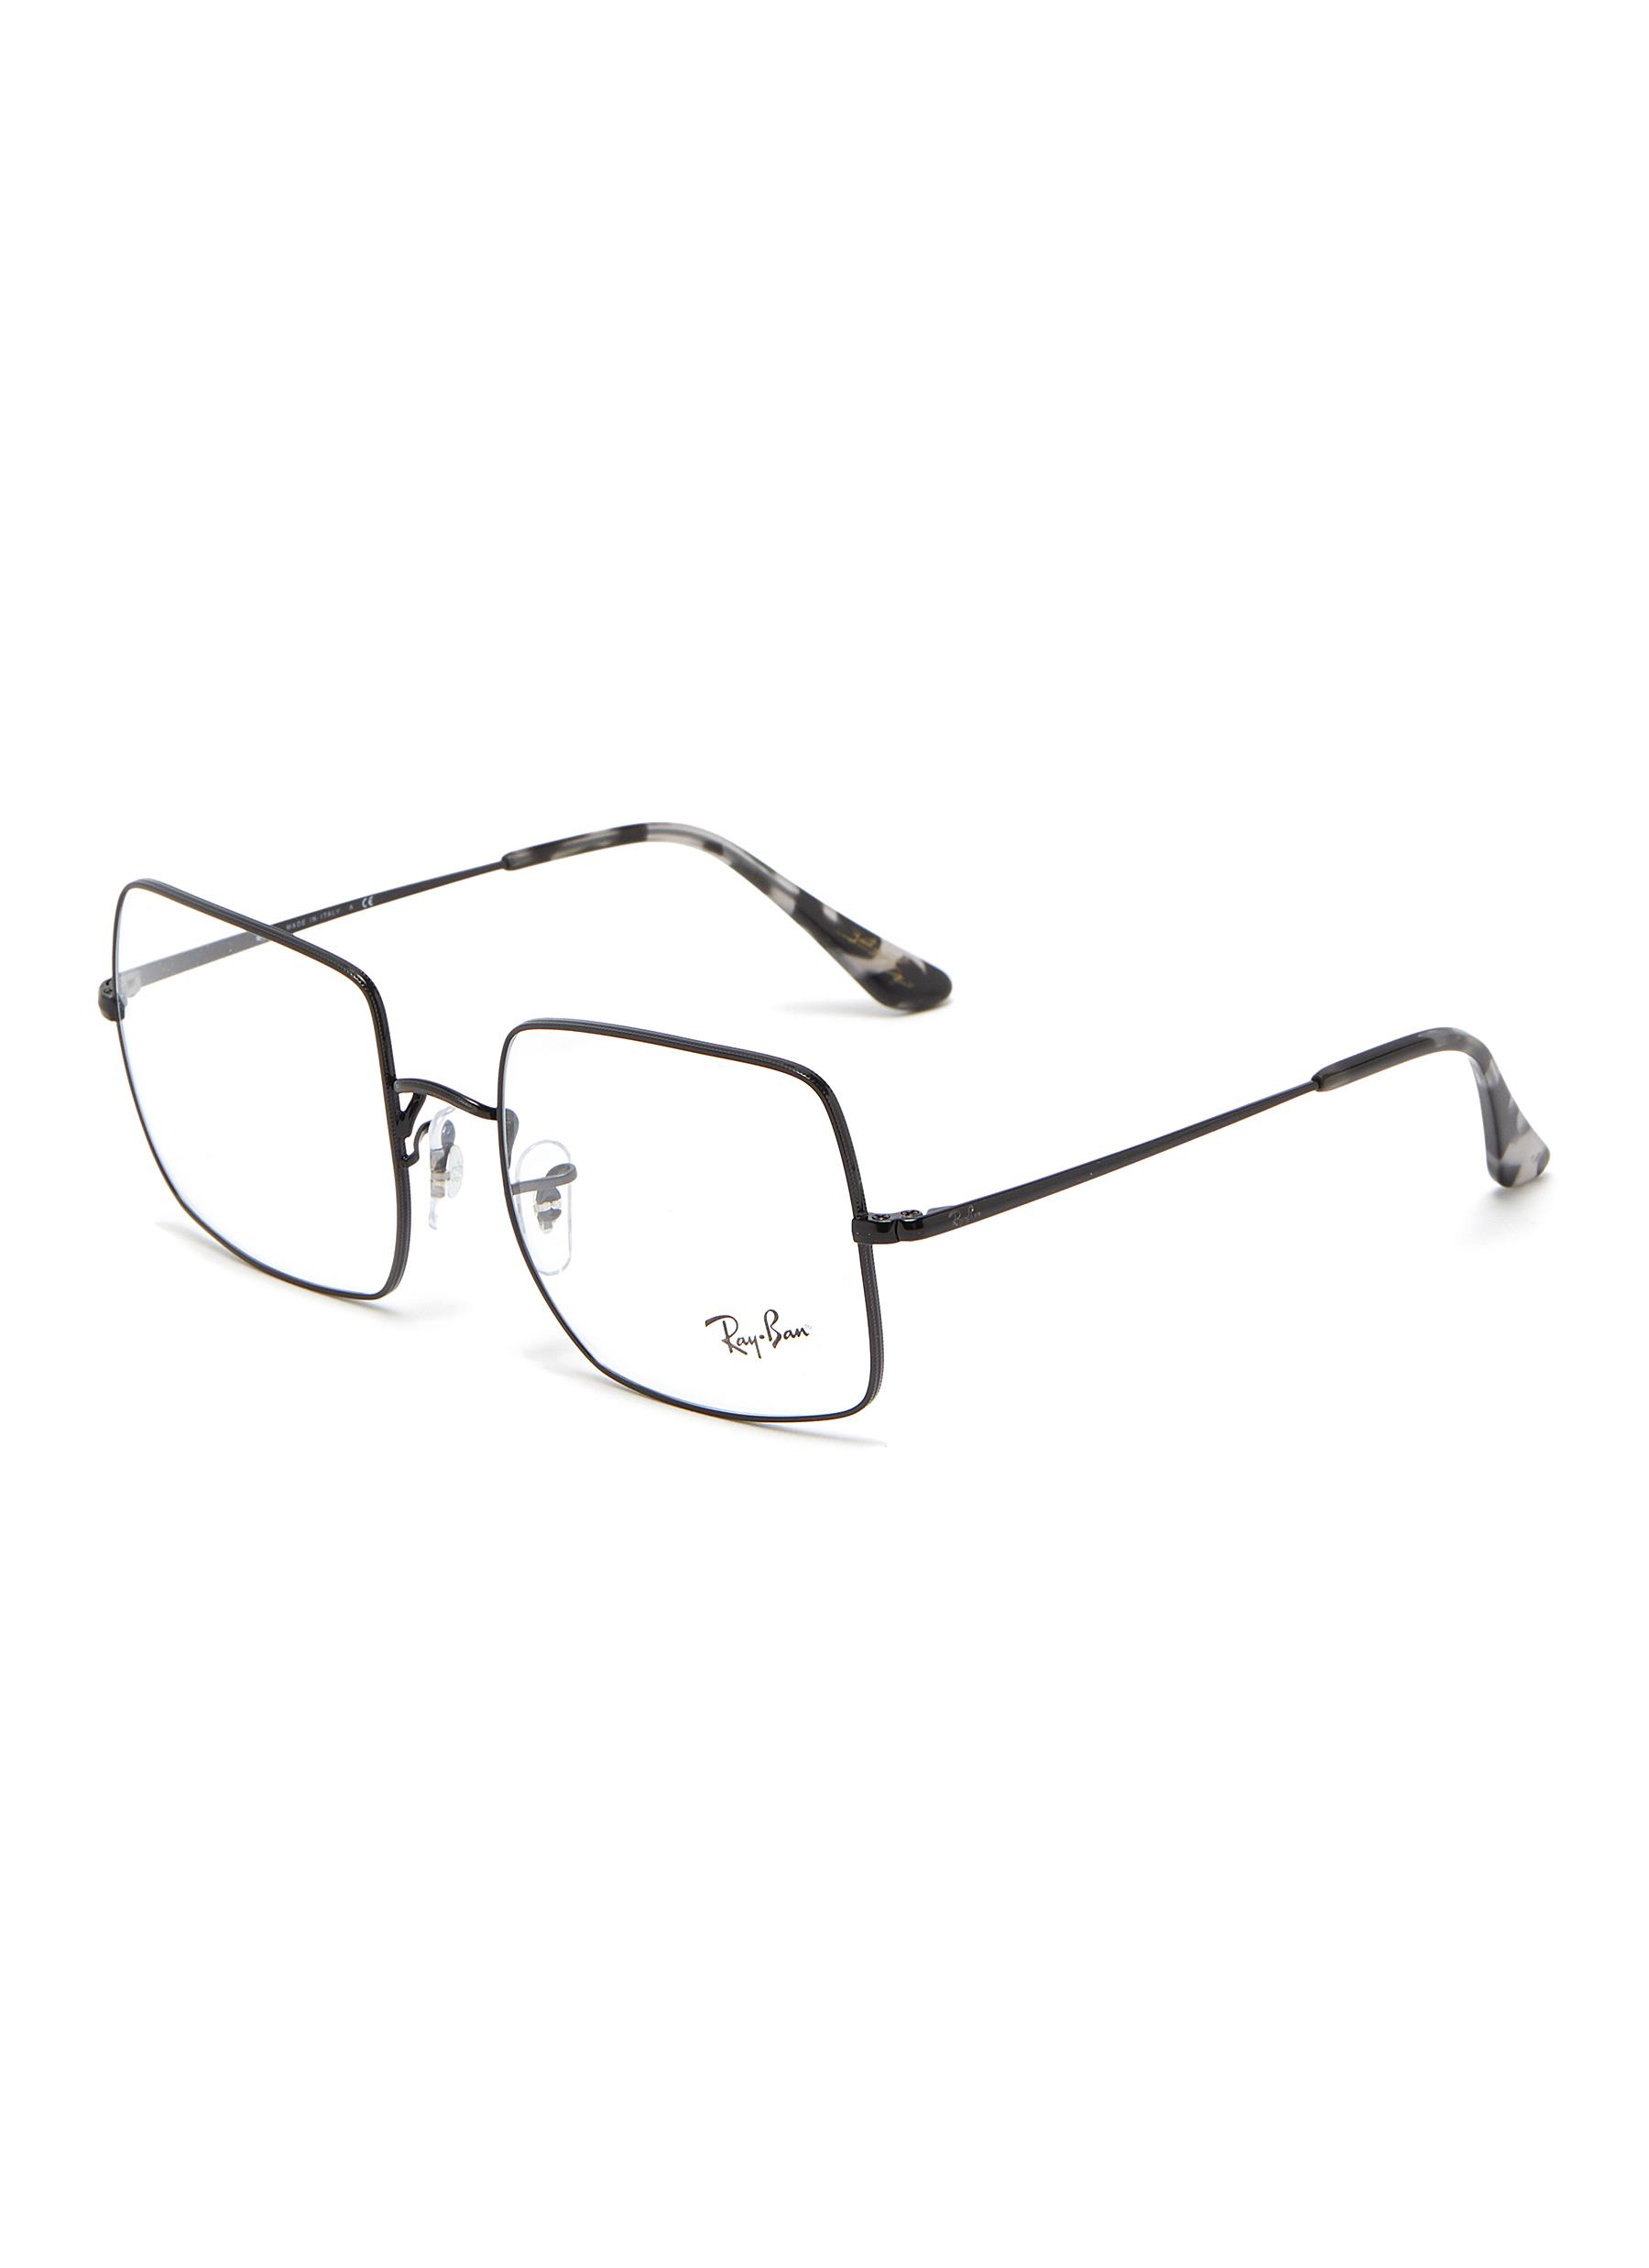 ray ban glasses metal frame